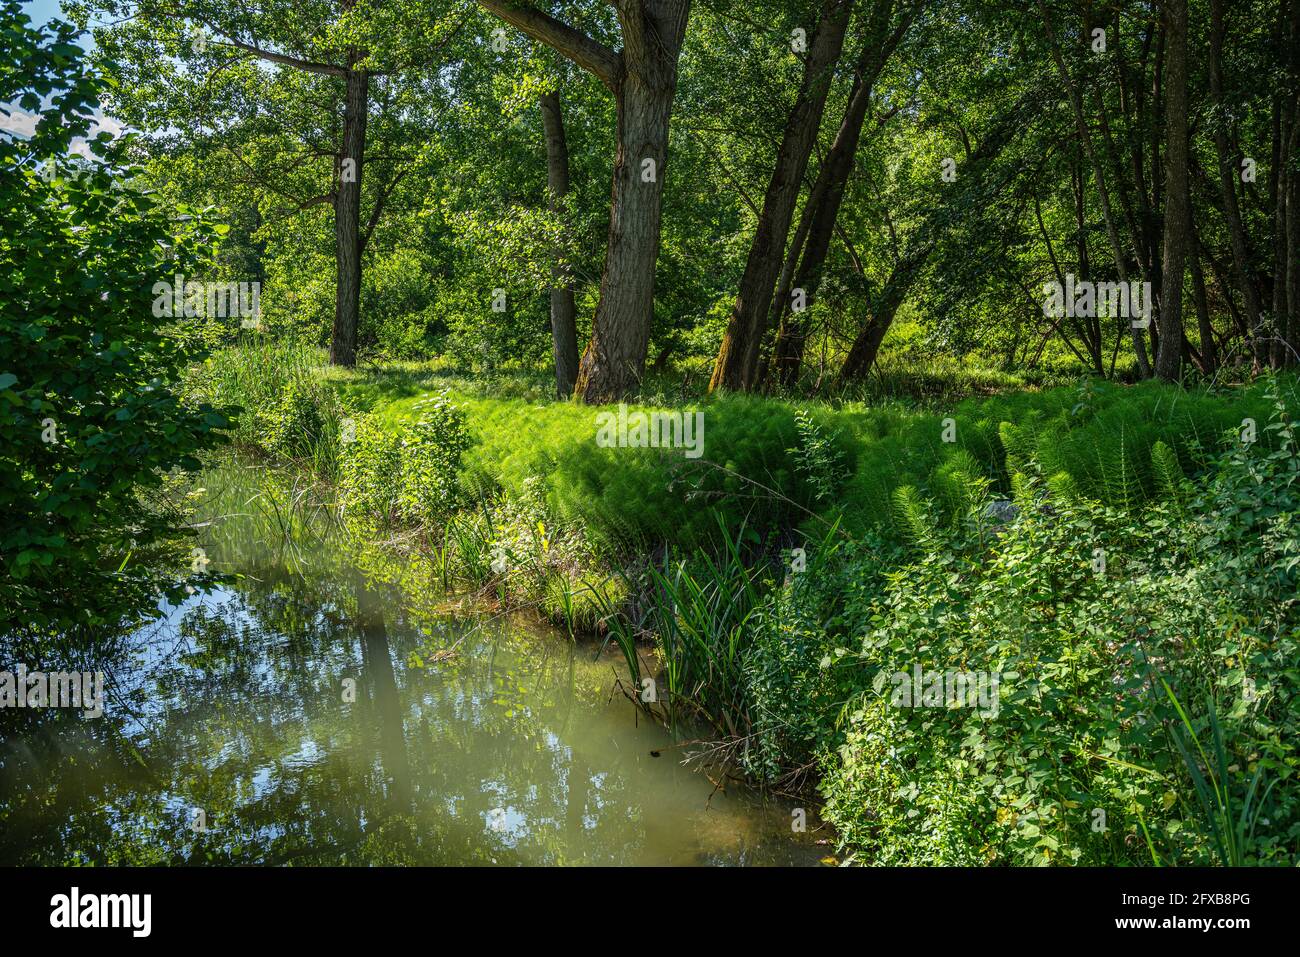 An einem sonnigen Sommertag fließen leise kleine Bäche zwischen hohem Gras und Wasservegetation. Abruzzen, Italien, Europa Stockfoto